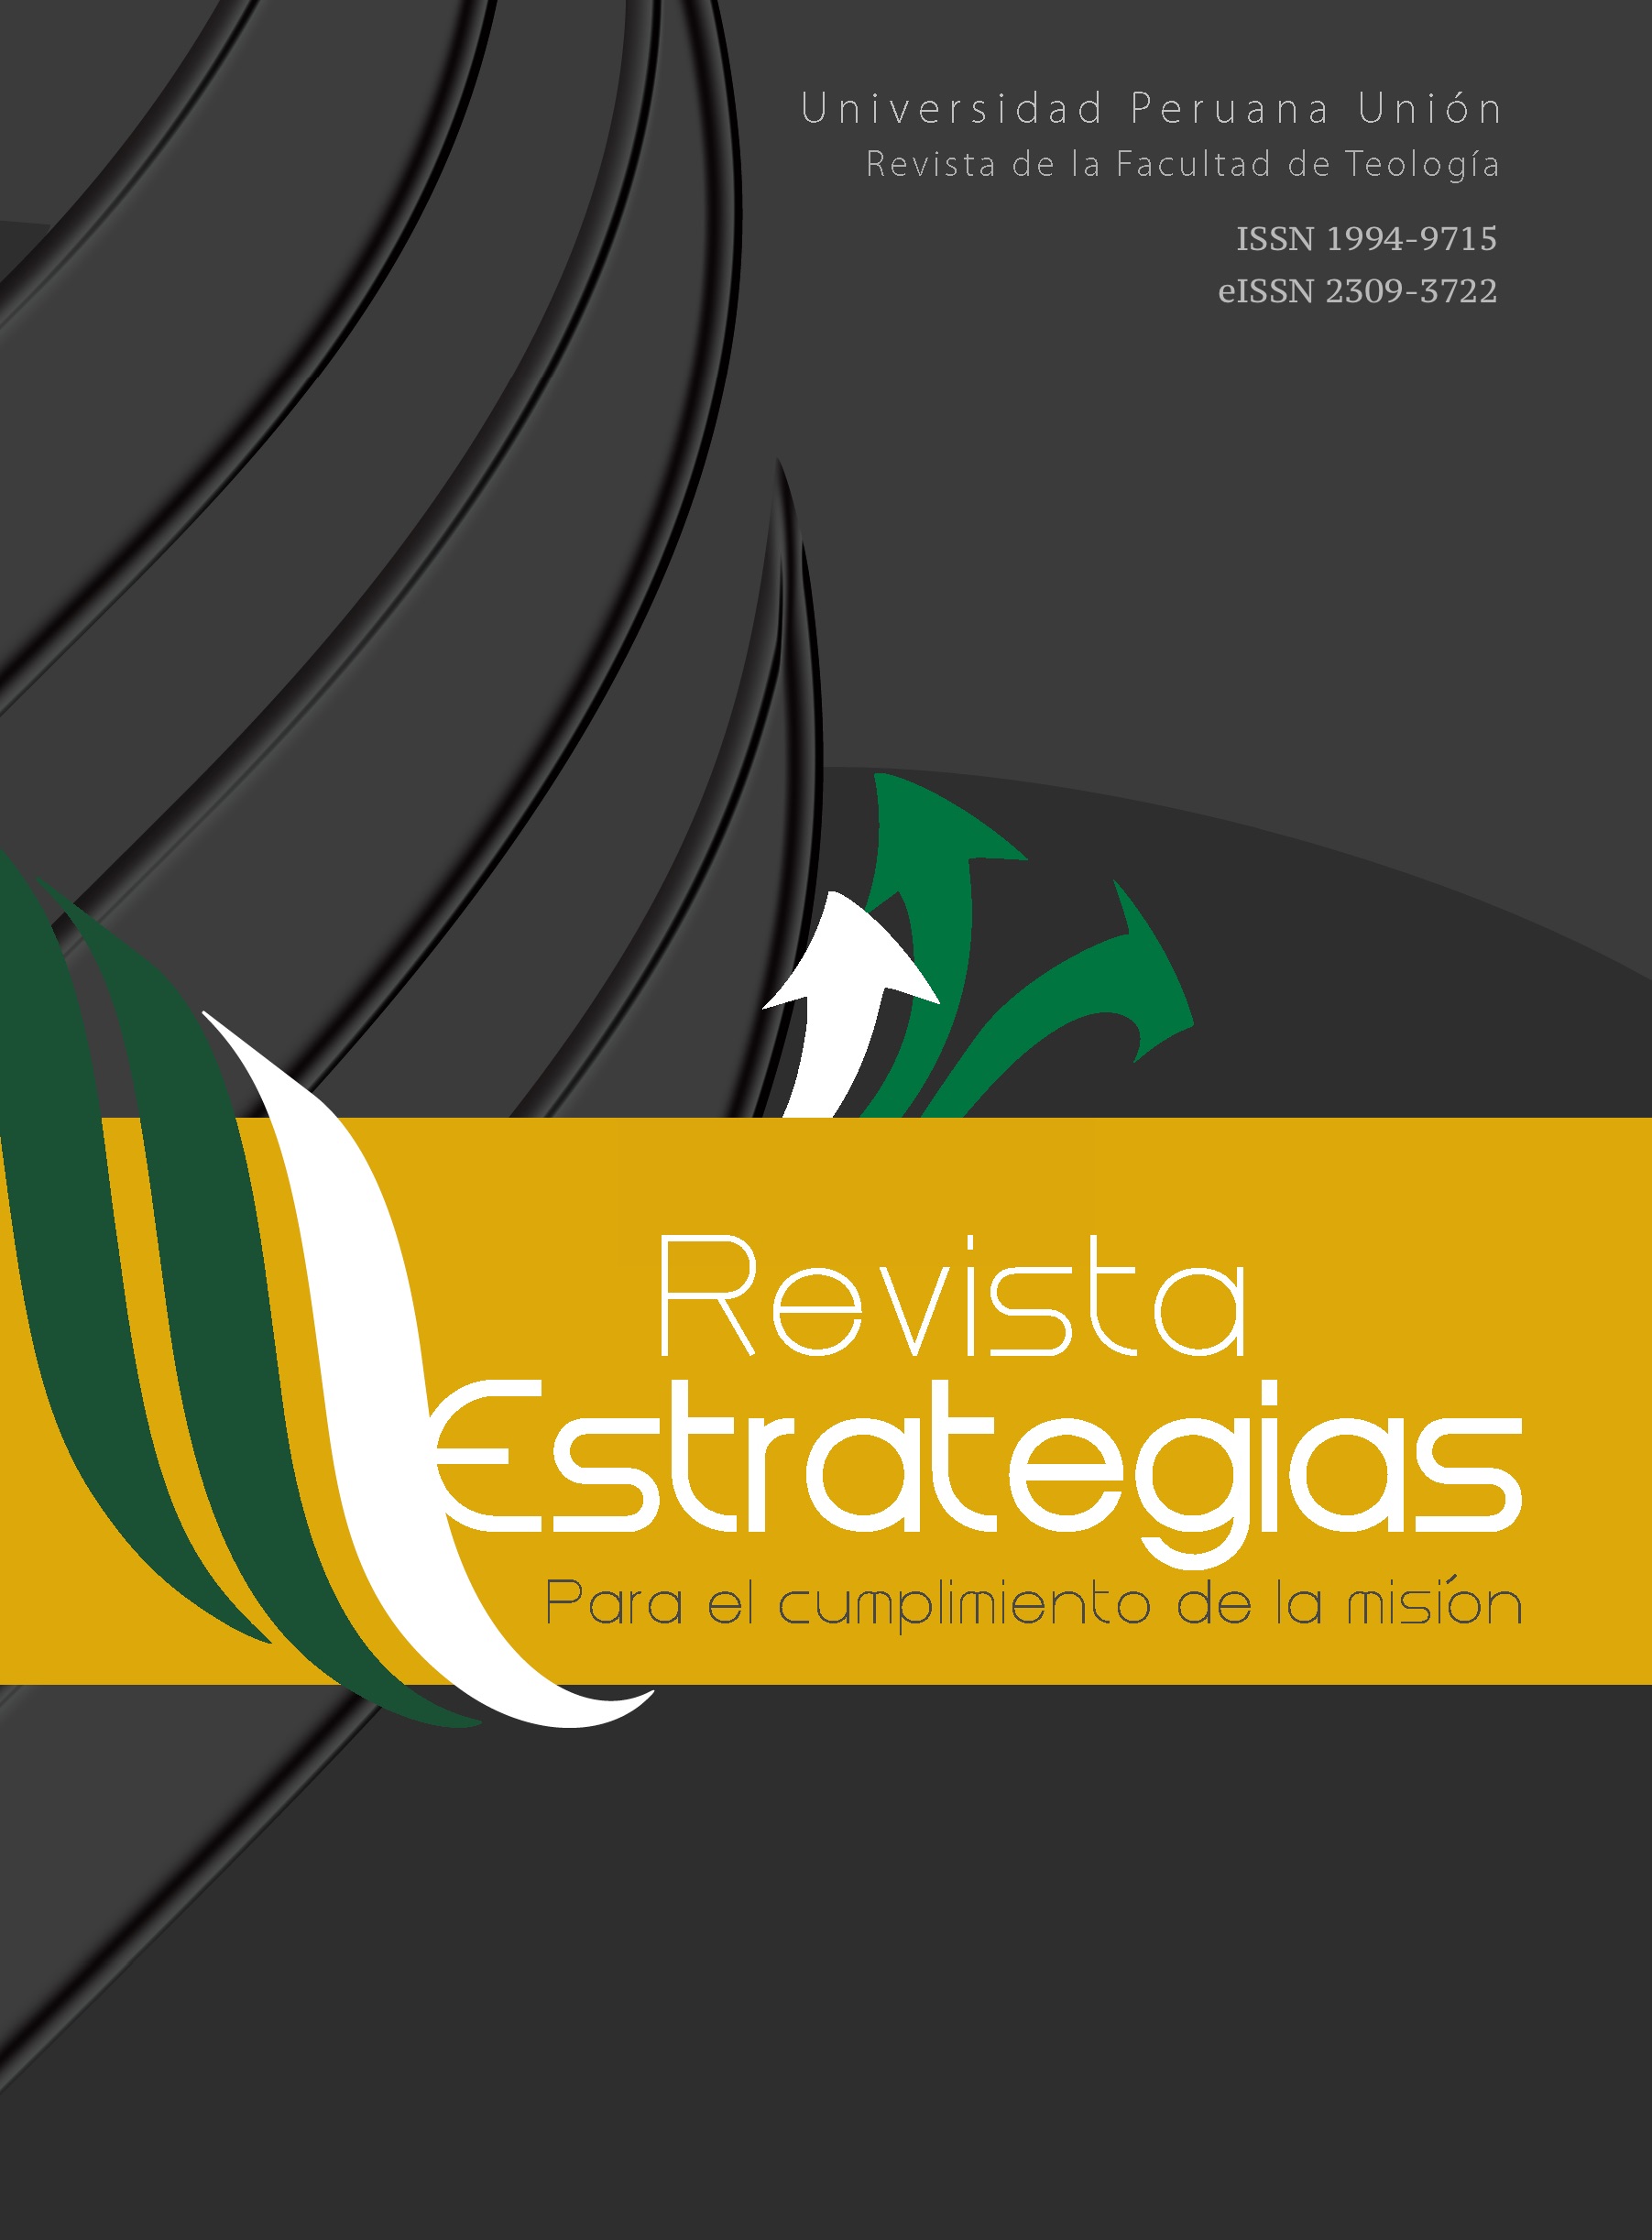 					Ver Vol. 17 Núm. 2 (2019): Revista estrategias para el cumplimiento de la misión (RECM)
				